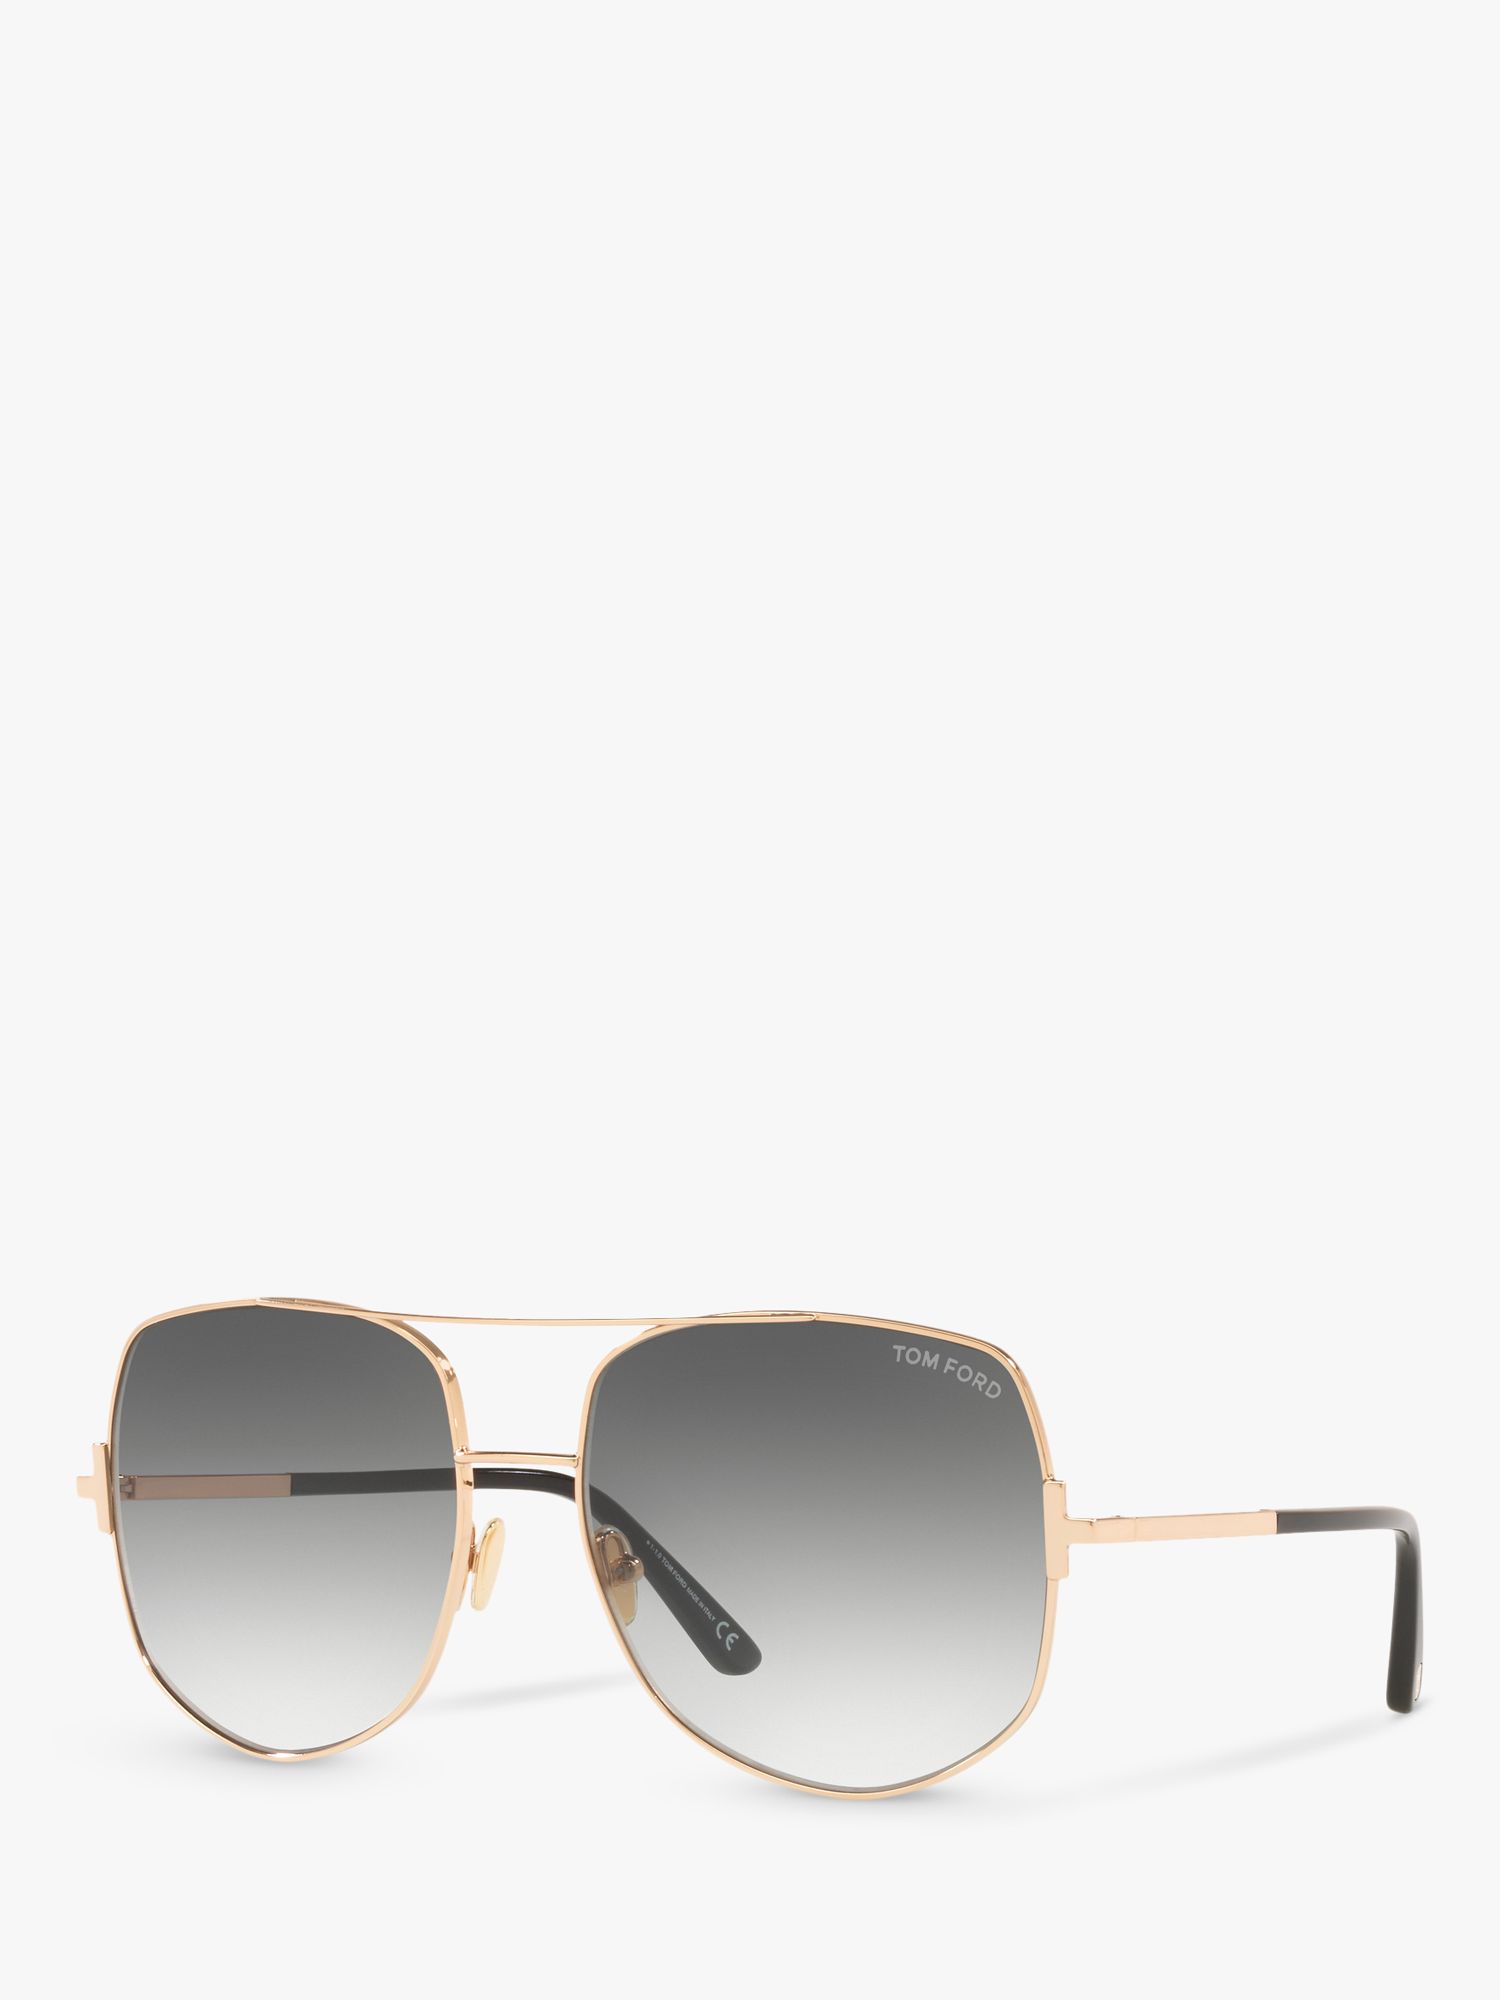 TOM FORD FT0783 Women's Lennox Aviator Sunglasses, Rose Gold/Grey ...